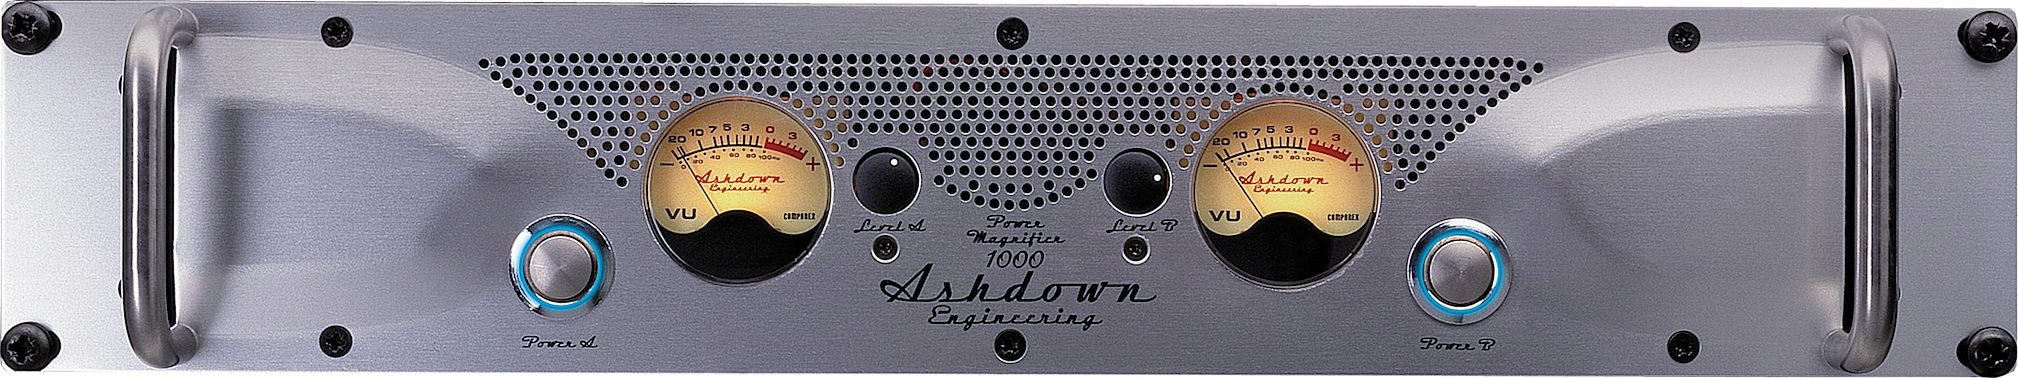 Ashdown ABM APM 1000 EVO II Power Amplifier (2x500 Watts)